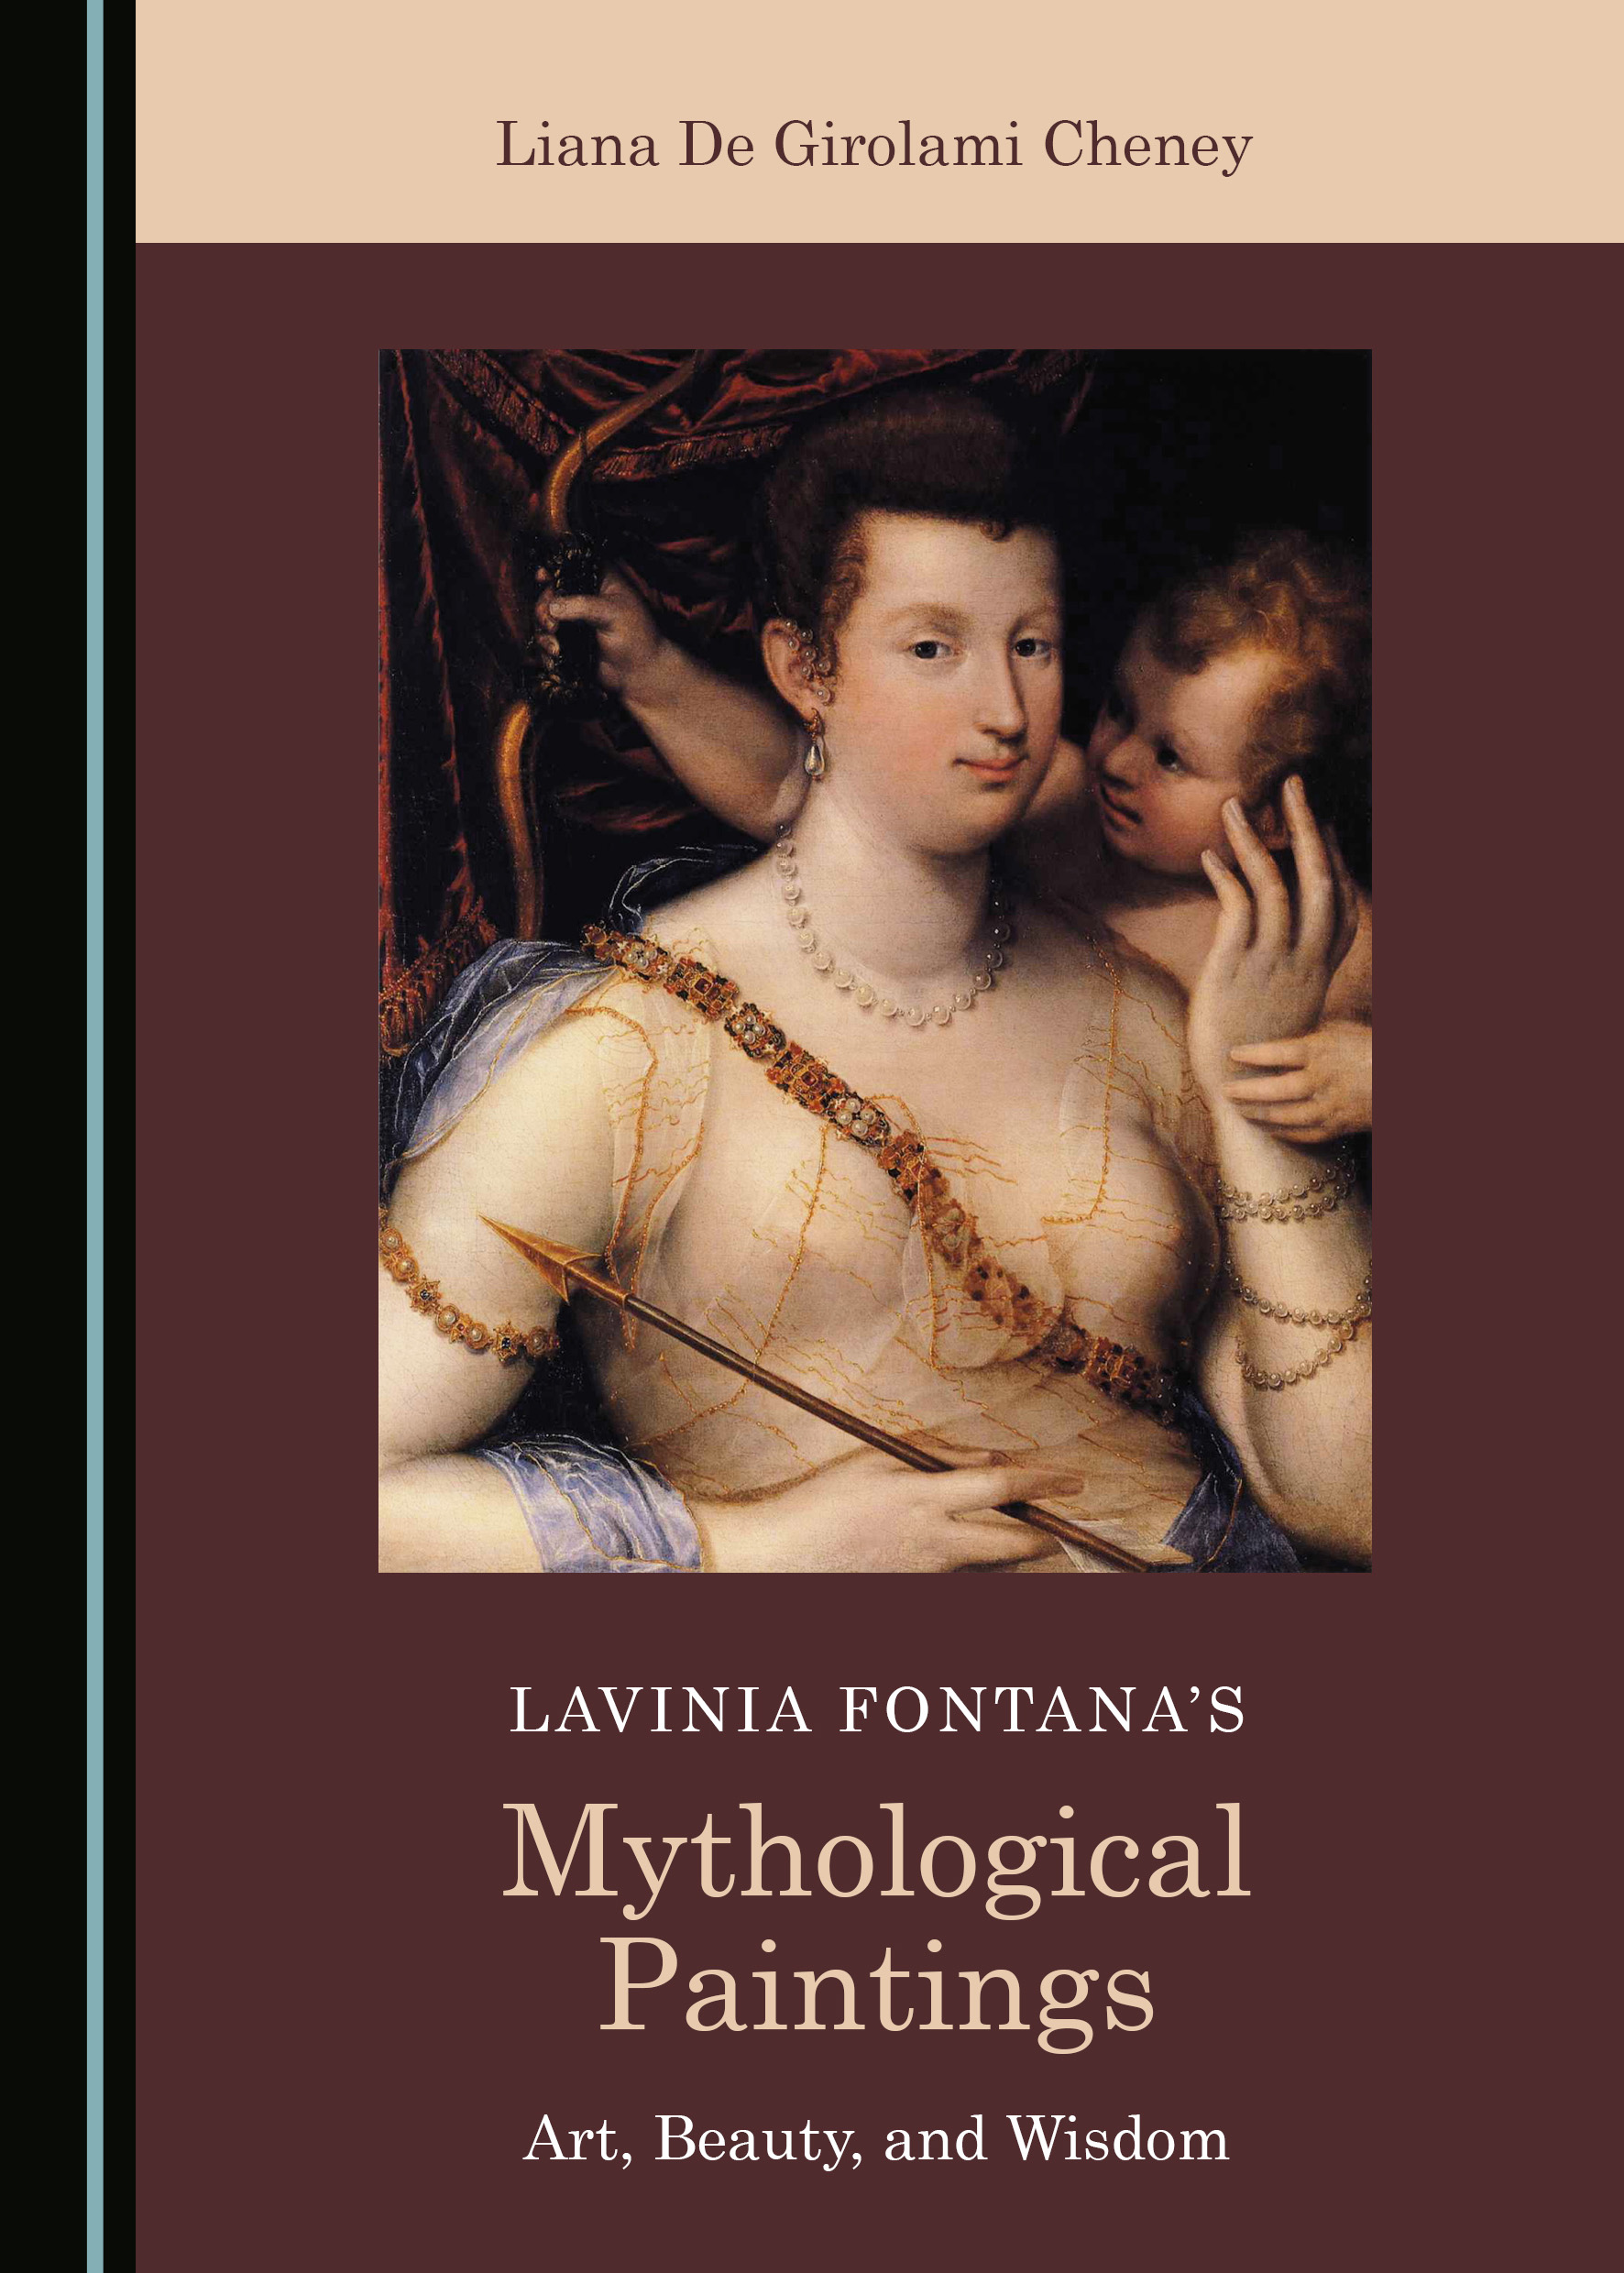 Lavinia Fontana’s Mythological Paintings: Art, Beauty, and Wisdom